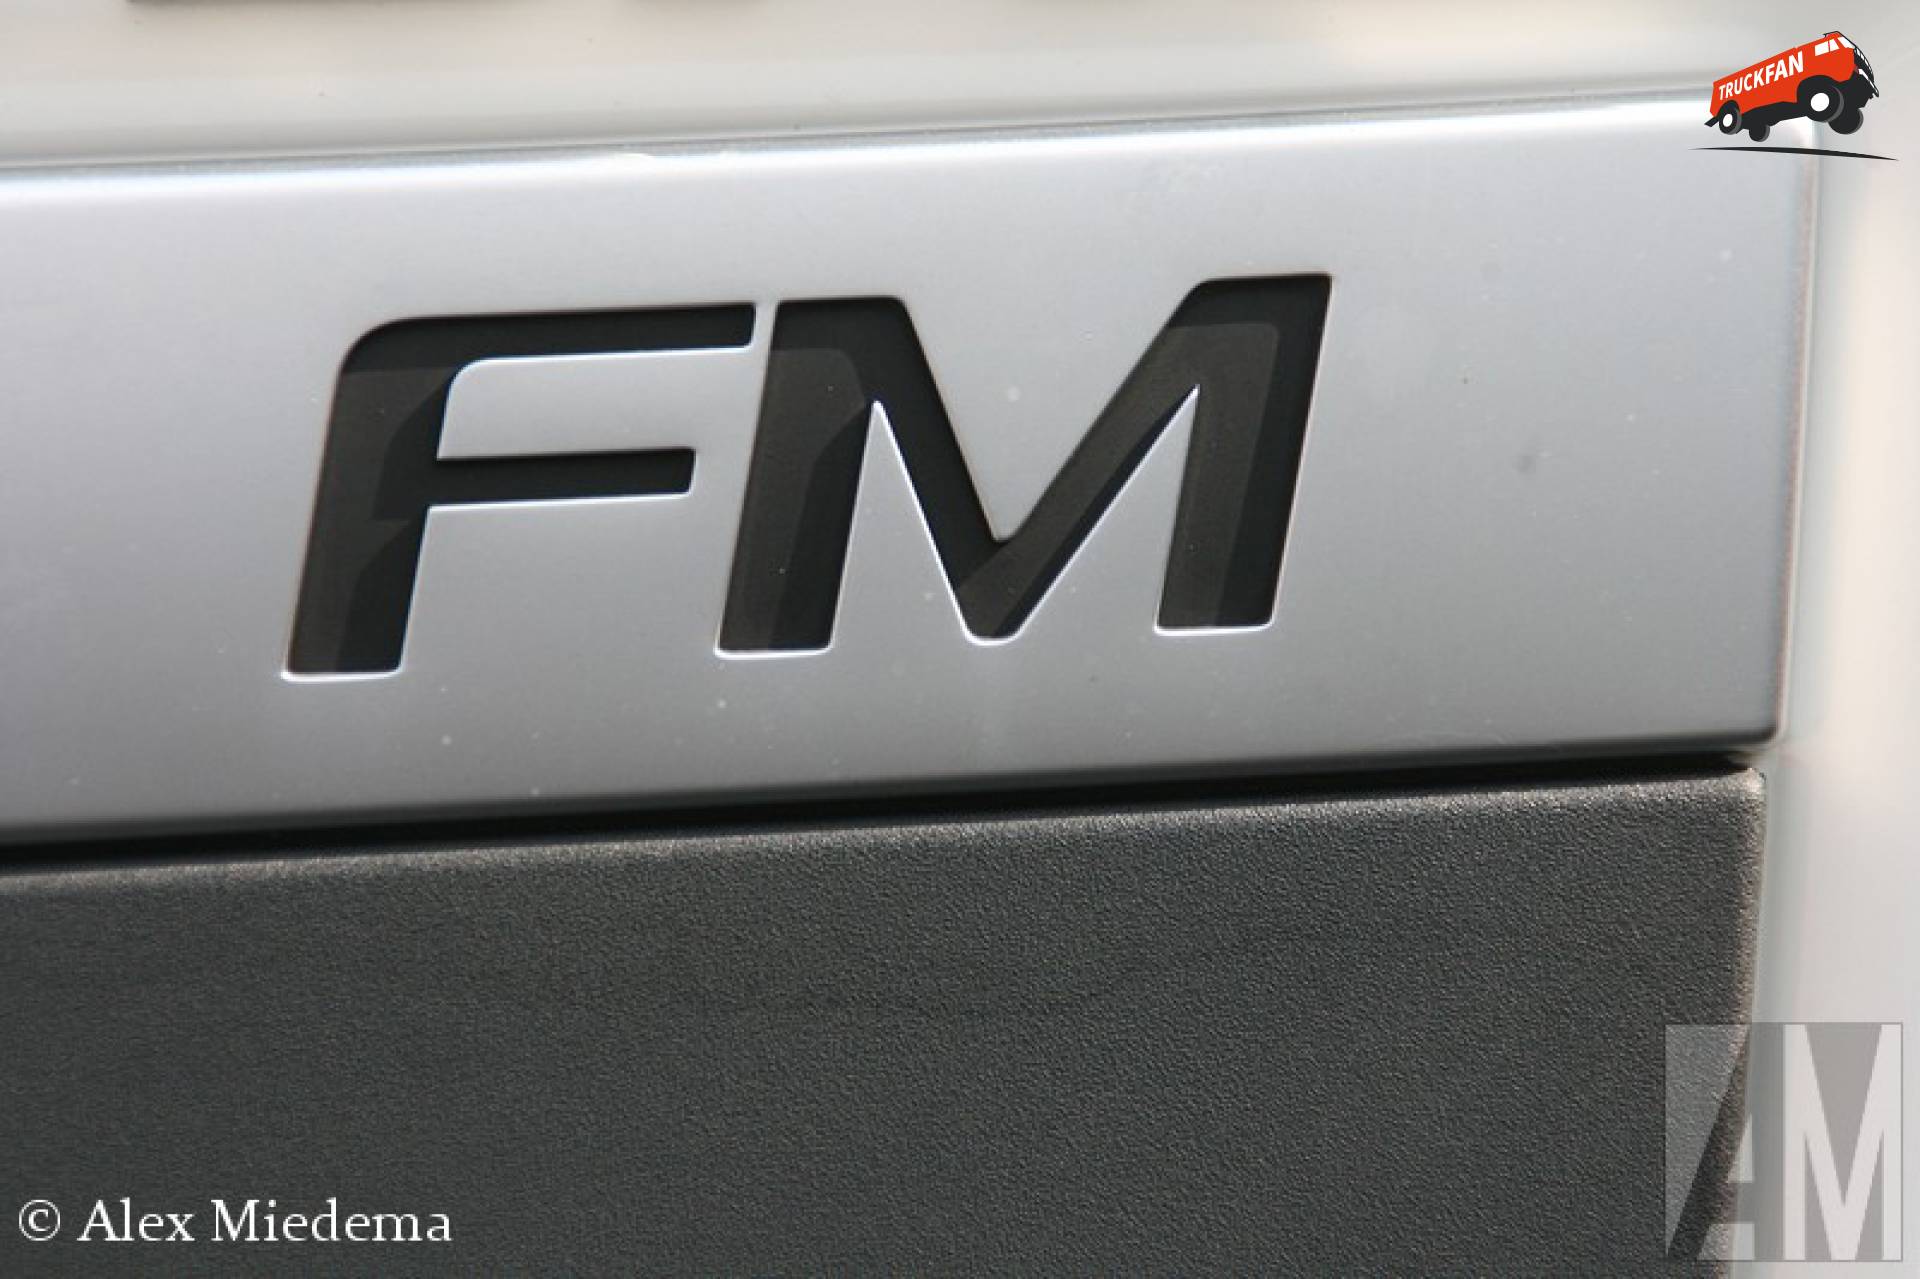 Volvo FM 3rd gen